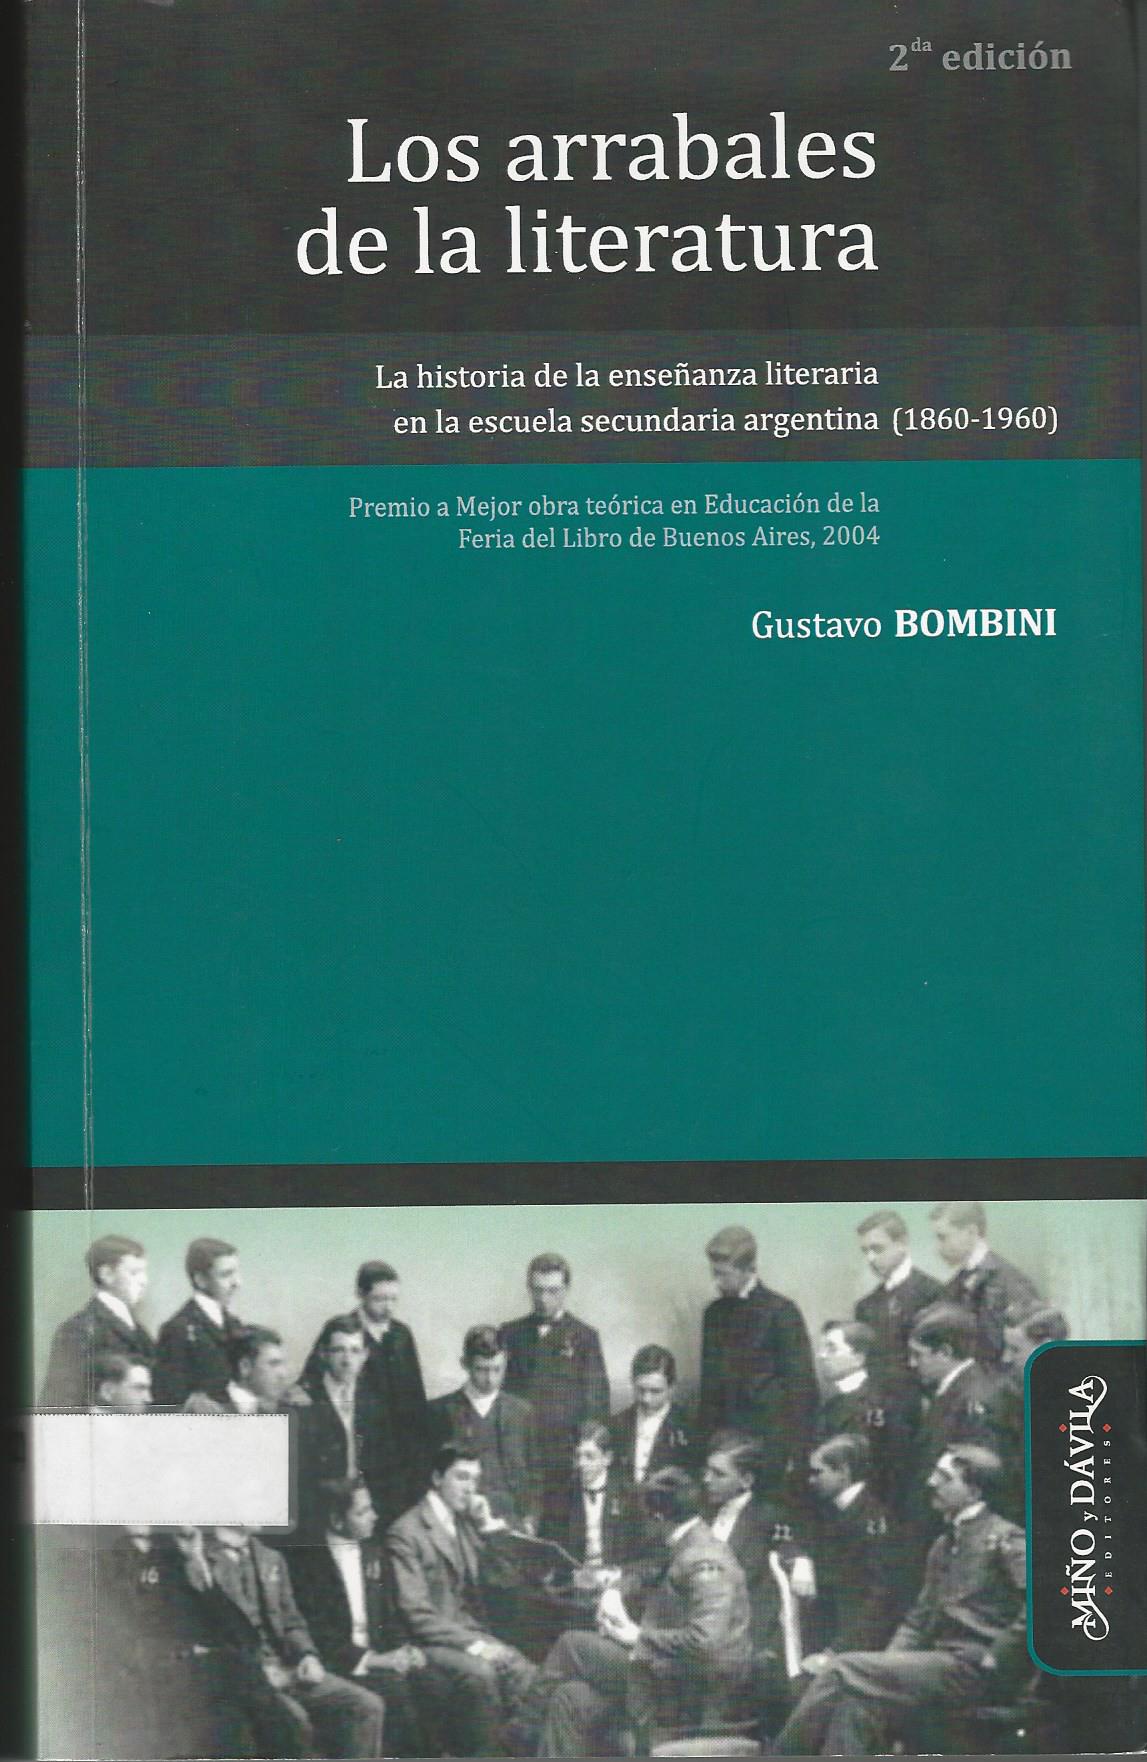 Los arrabales de la literatura. La historia de la enseñanza literaria en la escuela secundaria argentina (1860 – 1960)